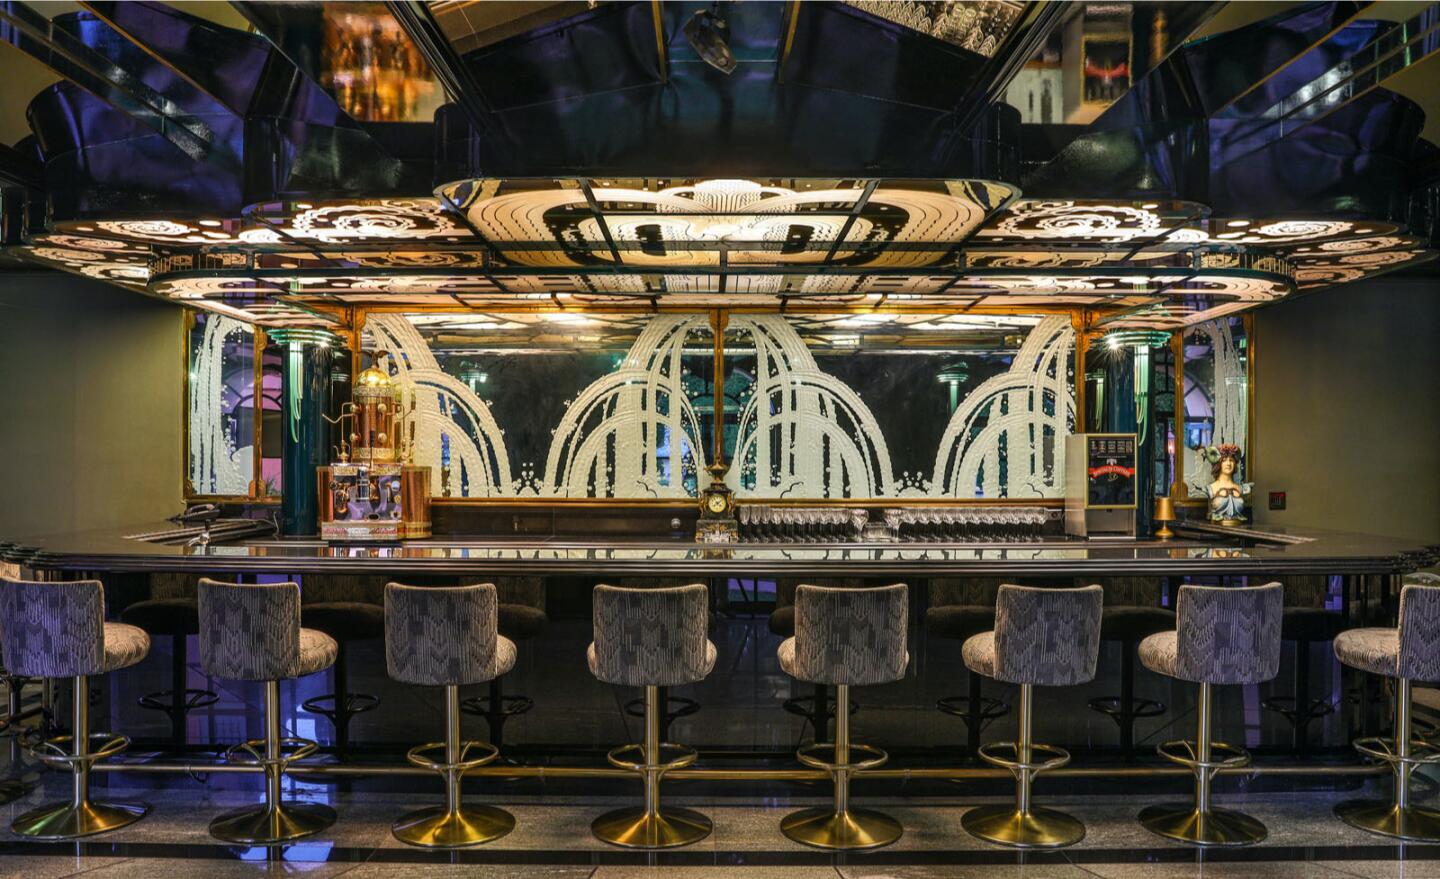 The Art Deco wet bar.